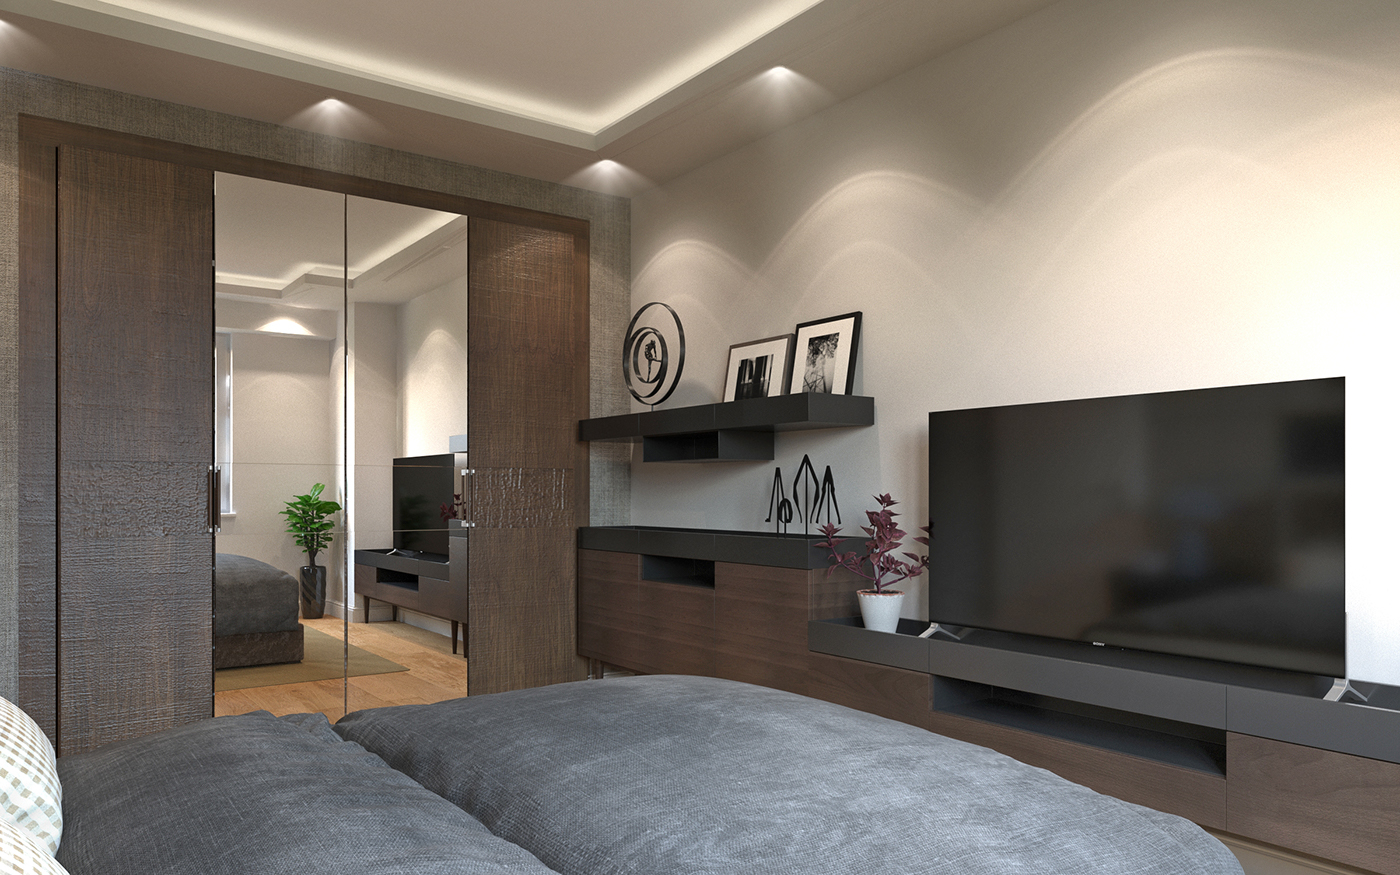 bedroom interiordesign interiorrendering 3dsmax corona render 